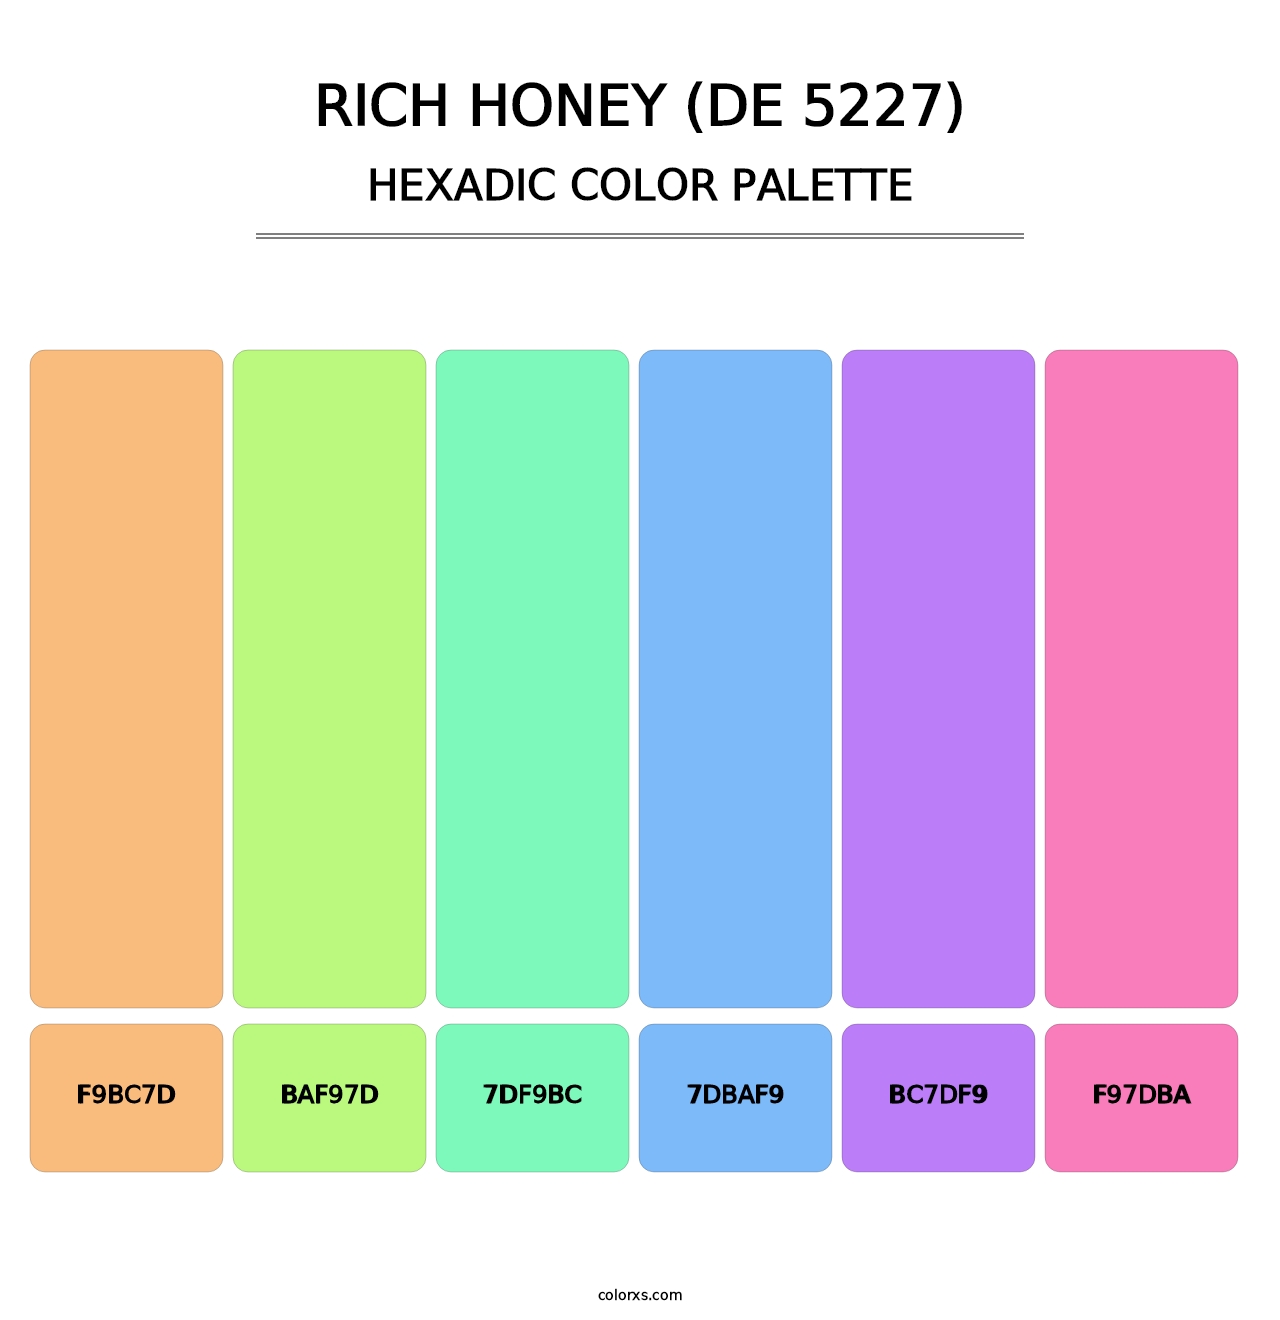 Rich Honey (DE 5227) - Hexadic Color Palette